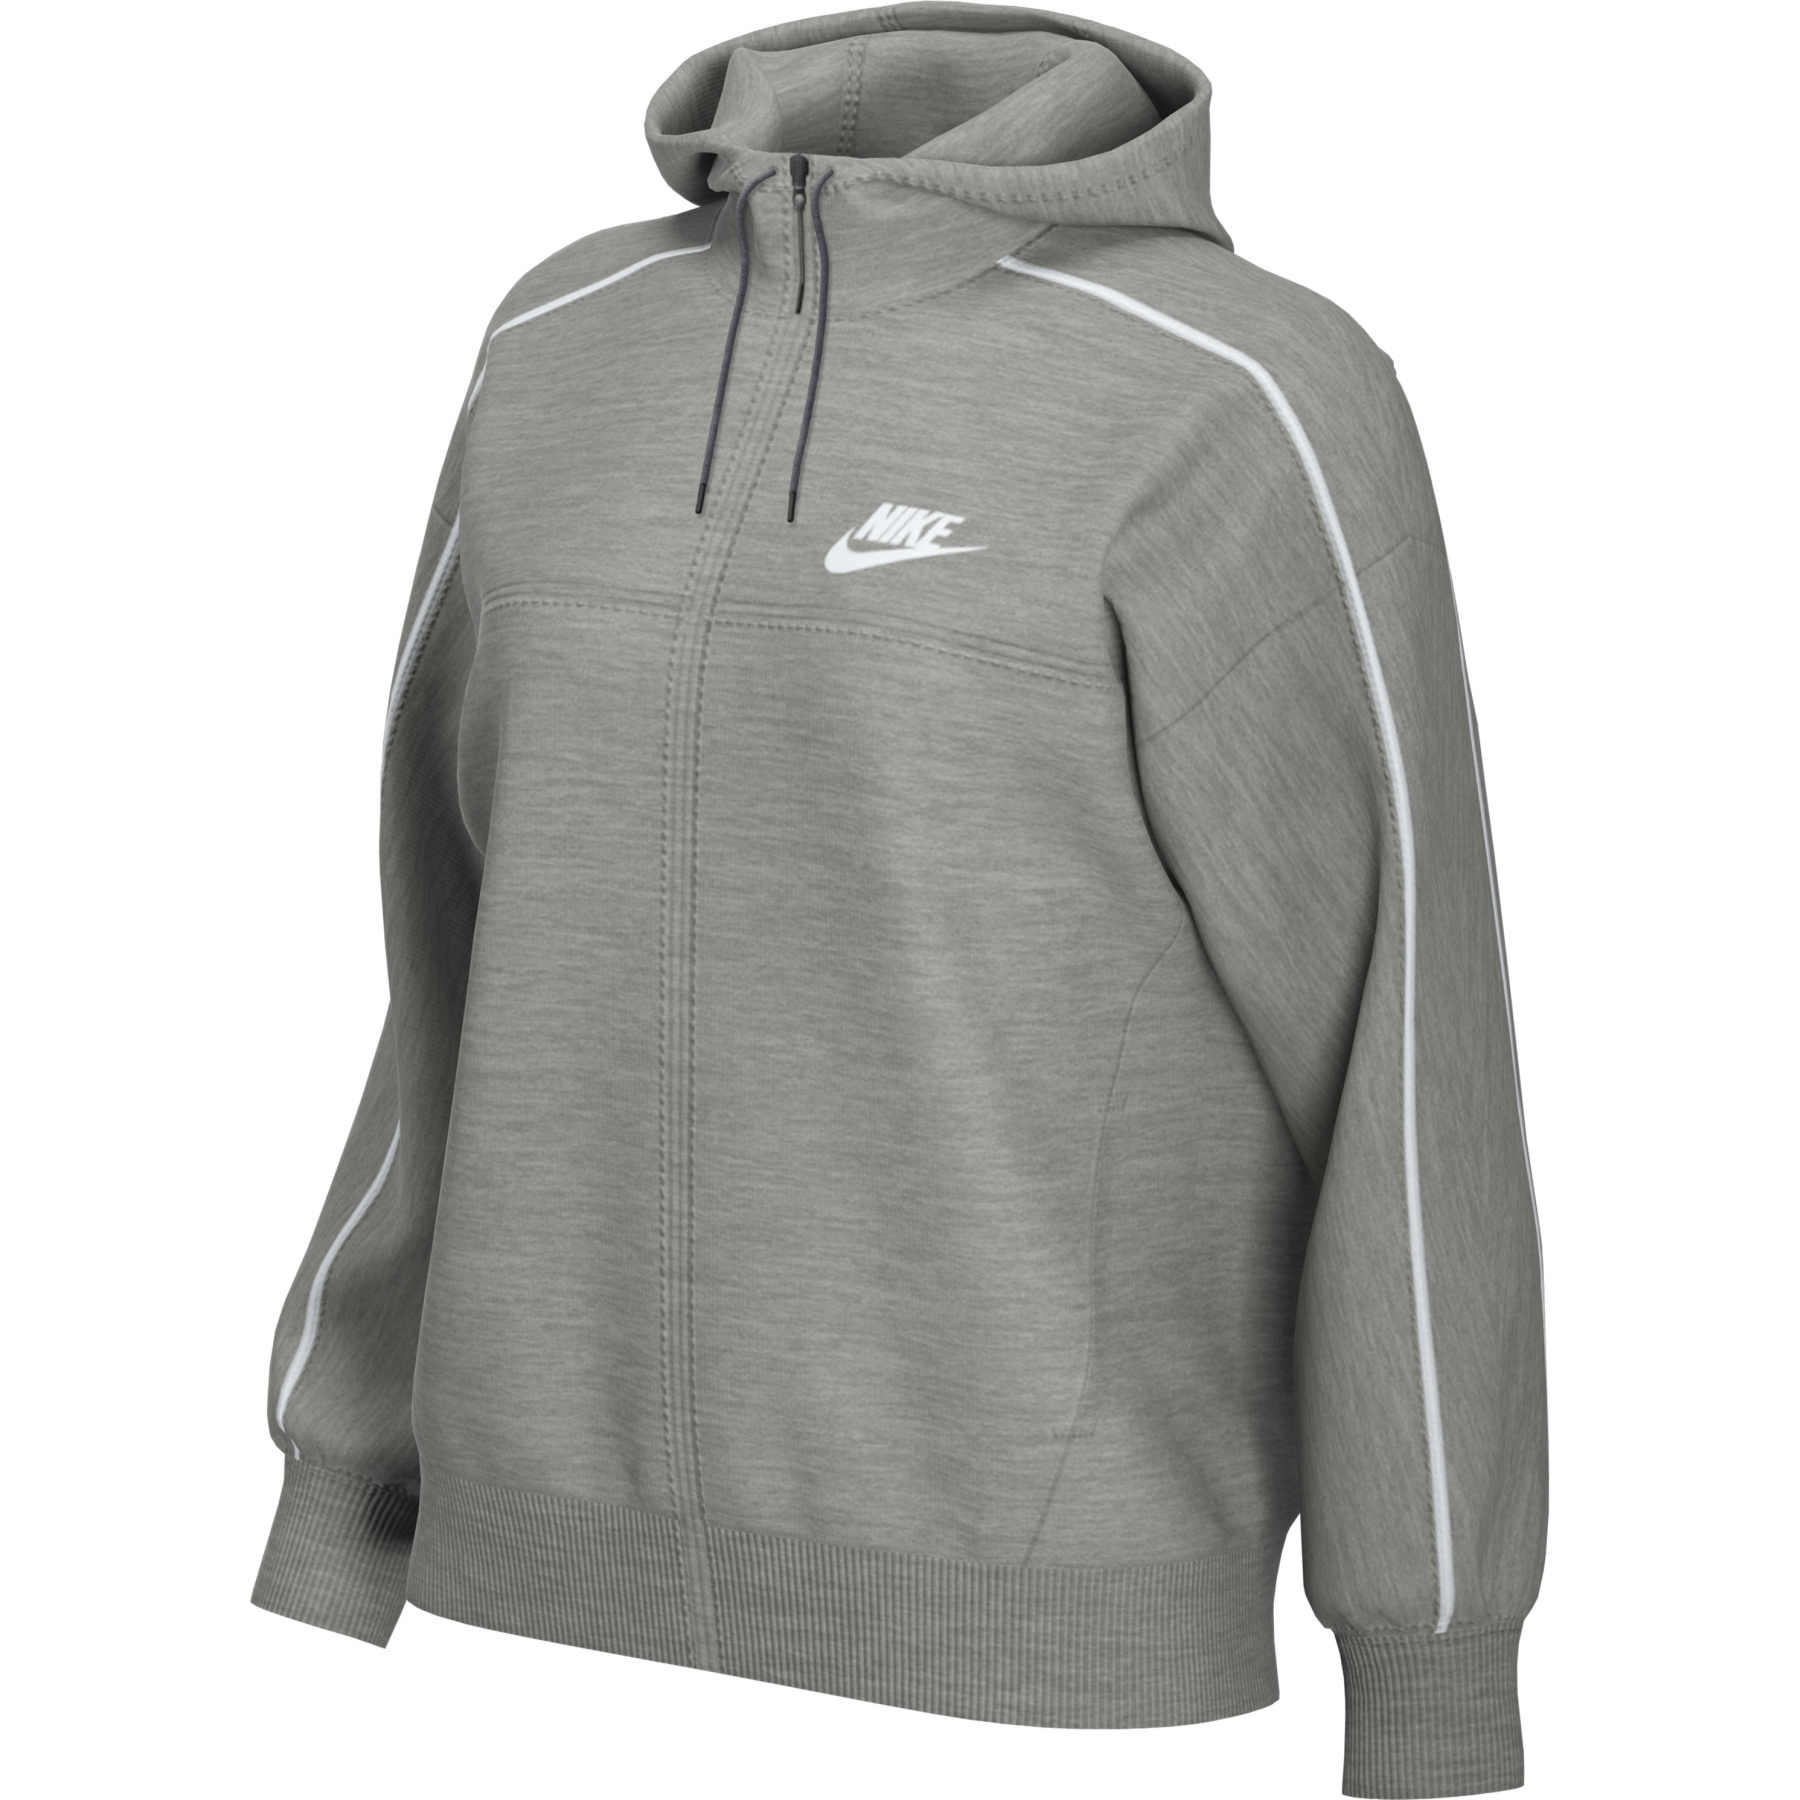 Immagine prodotto da Nike Giacca con capuccio Donna - Sportswear Millennium - dark grey heather/white CZ8338-063